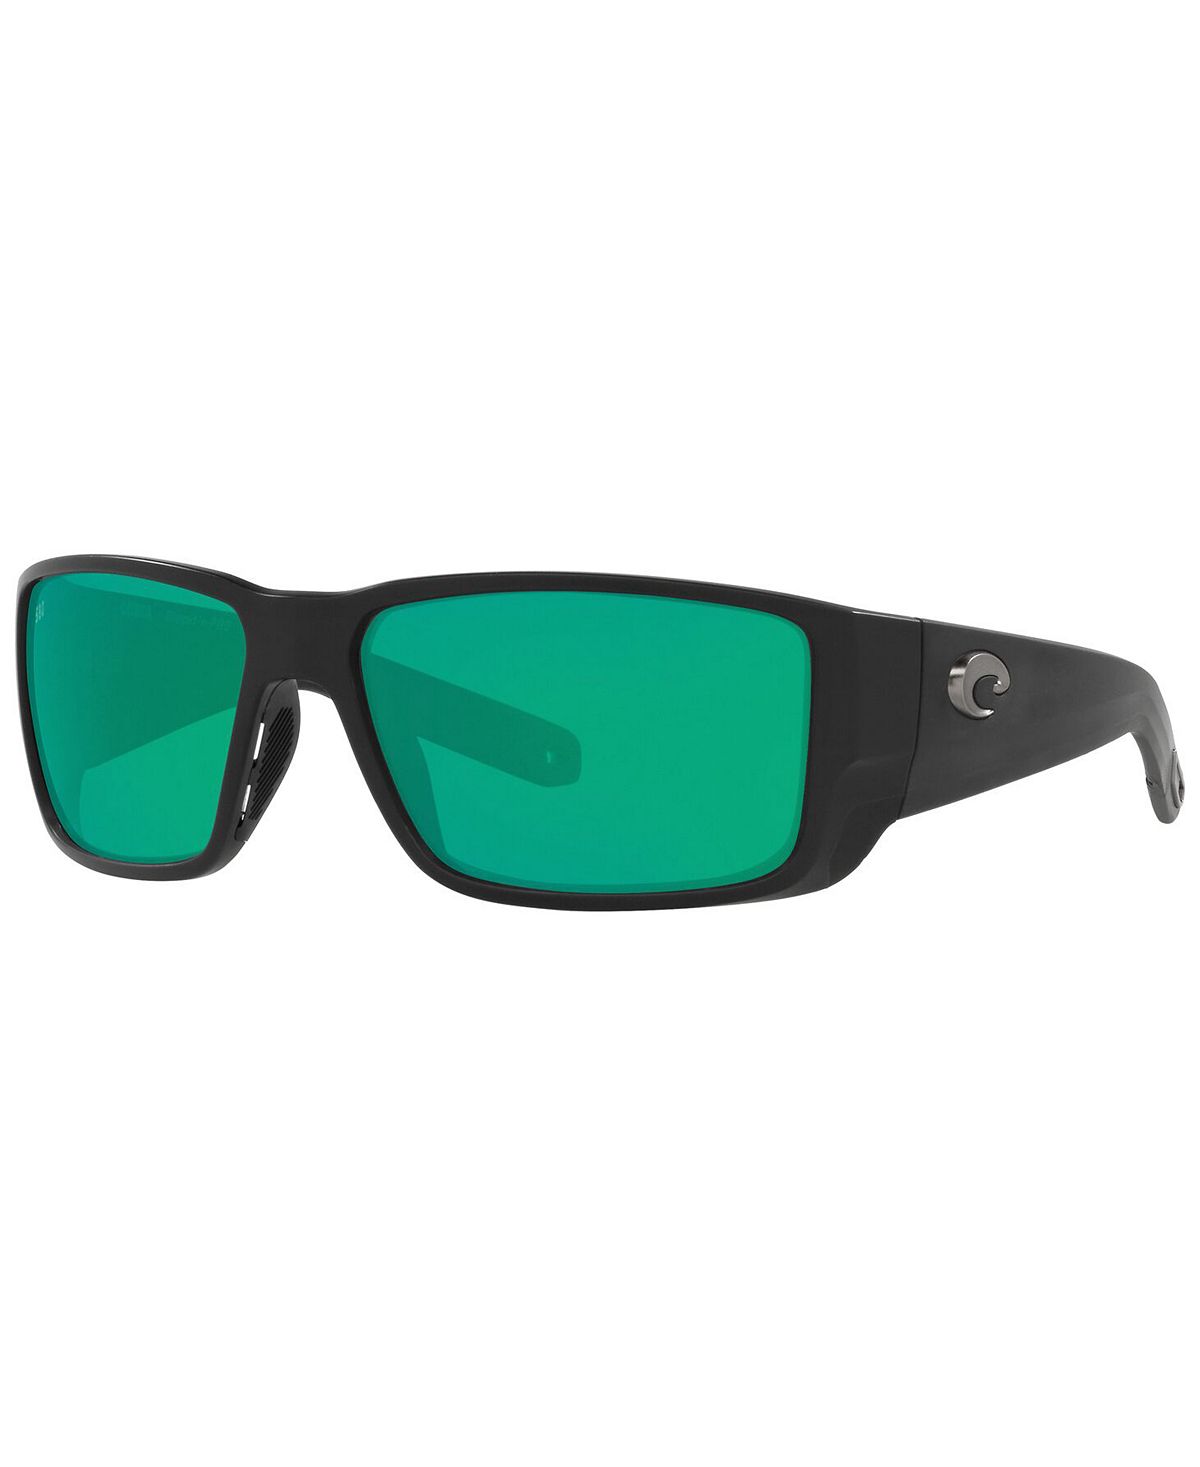 Поляризационные солнцезащитные очки BLACKFIN PRO, 6S9078 60 Costa Del Mar